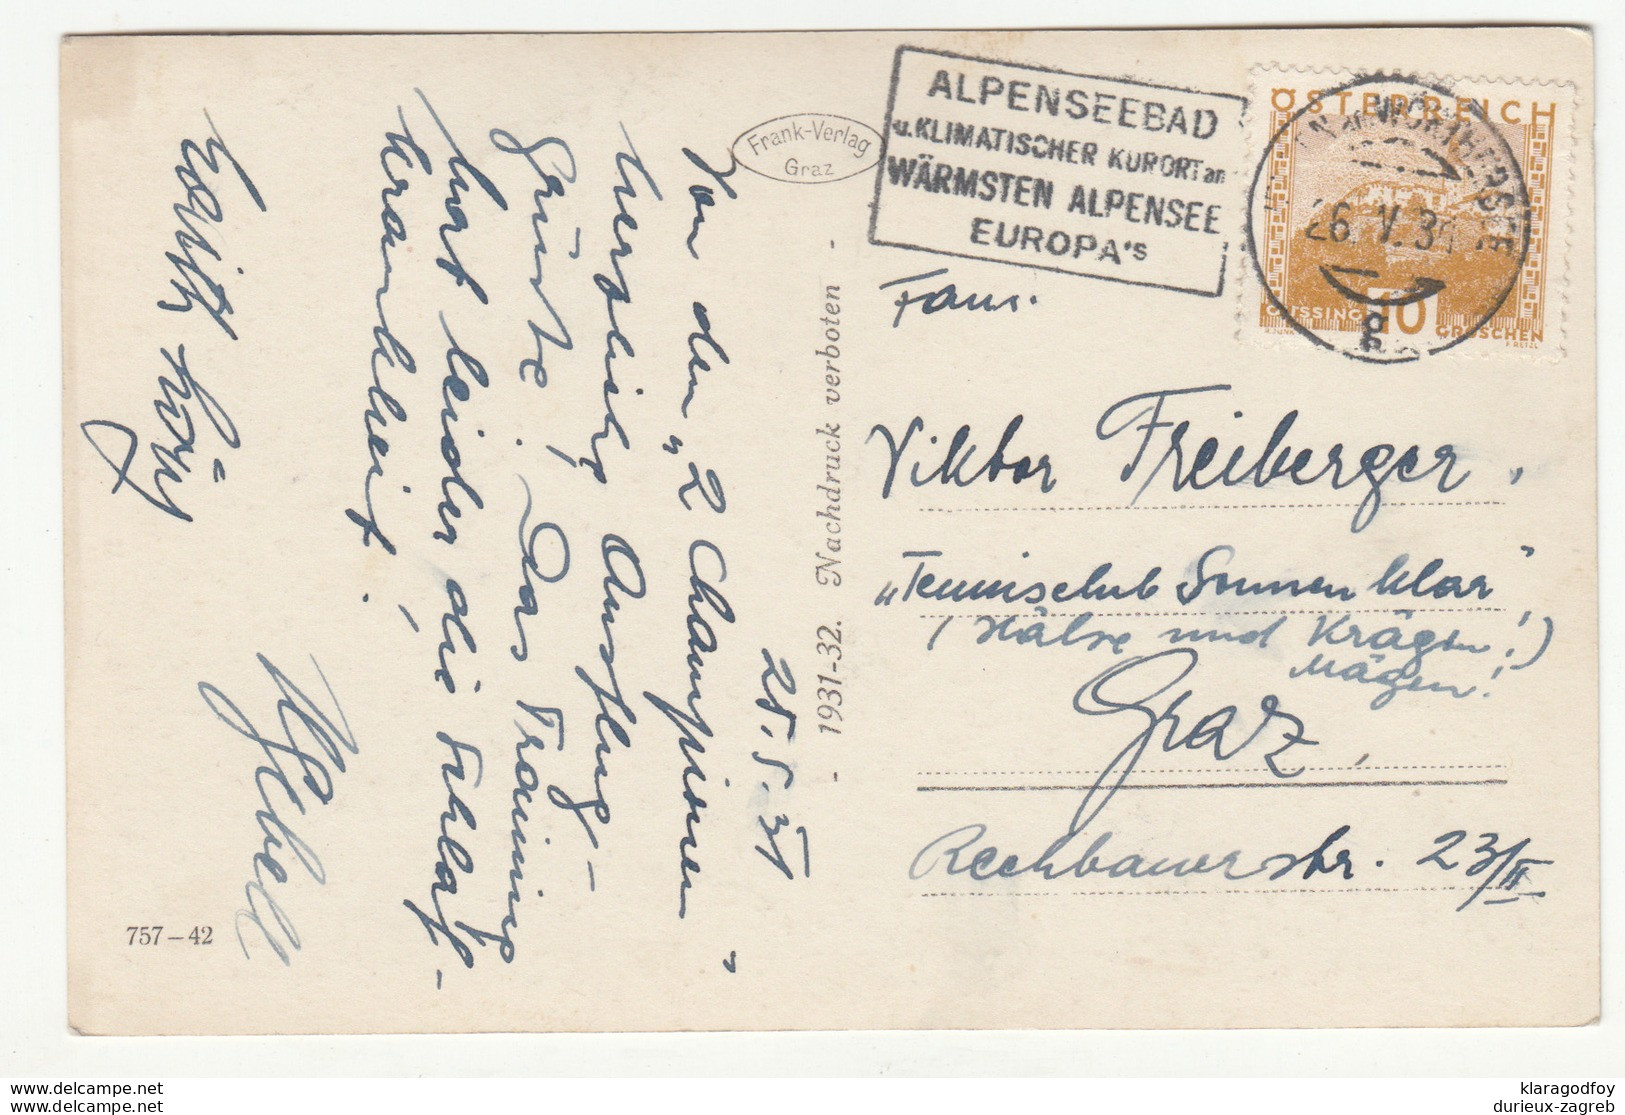 Velden Am Wörthersee Old Postcard Travelled 1931 B190110 - Velden